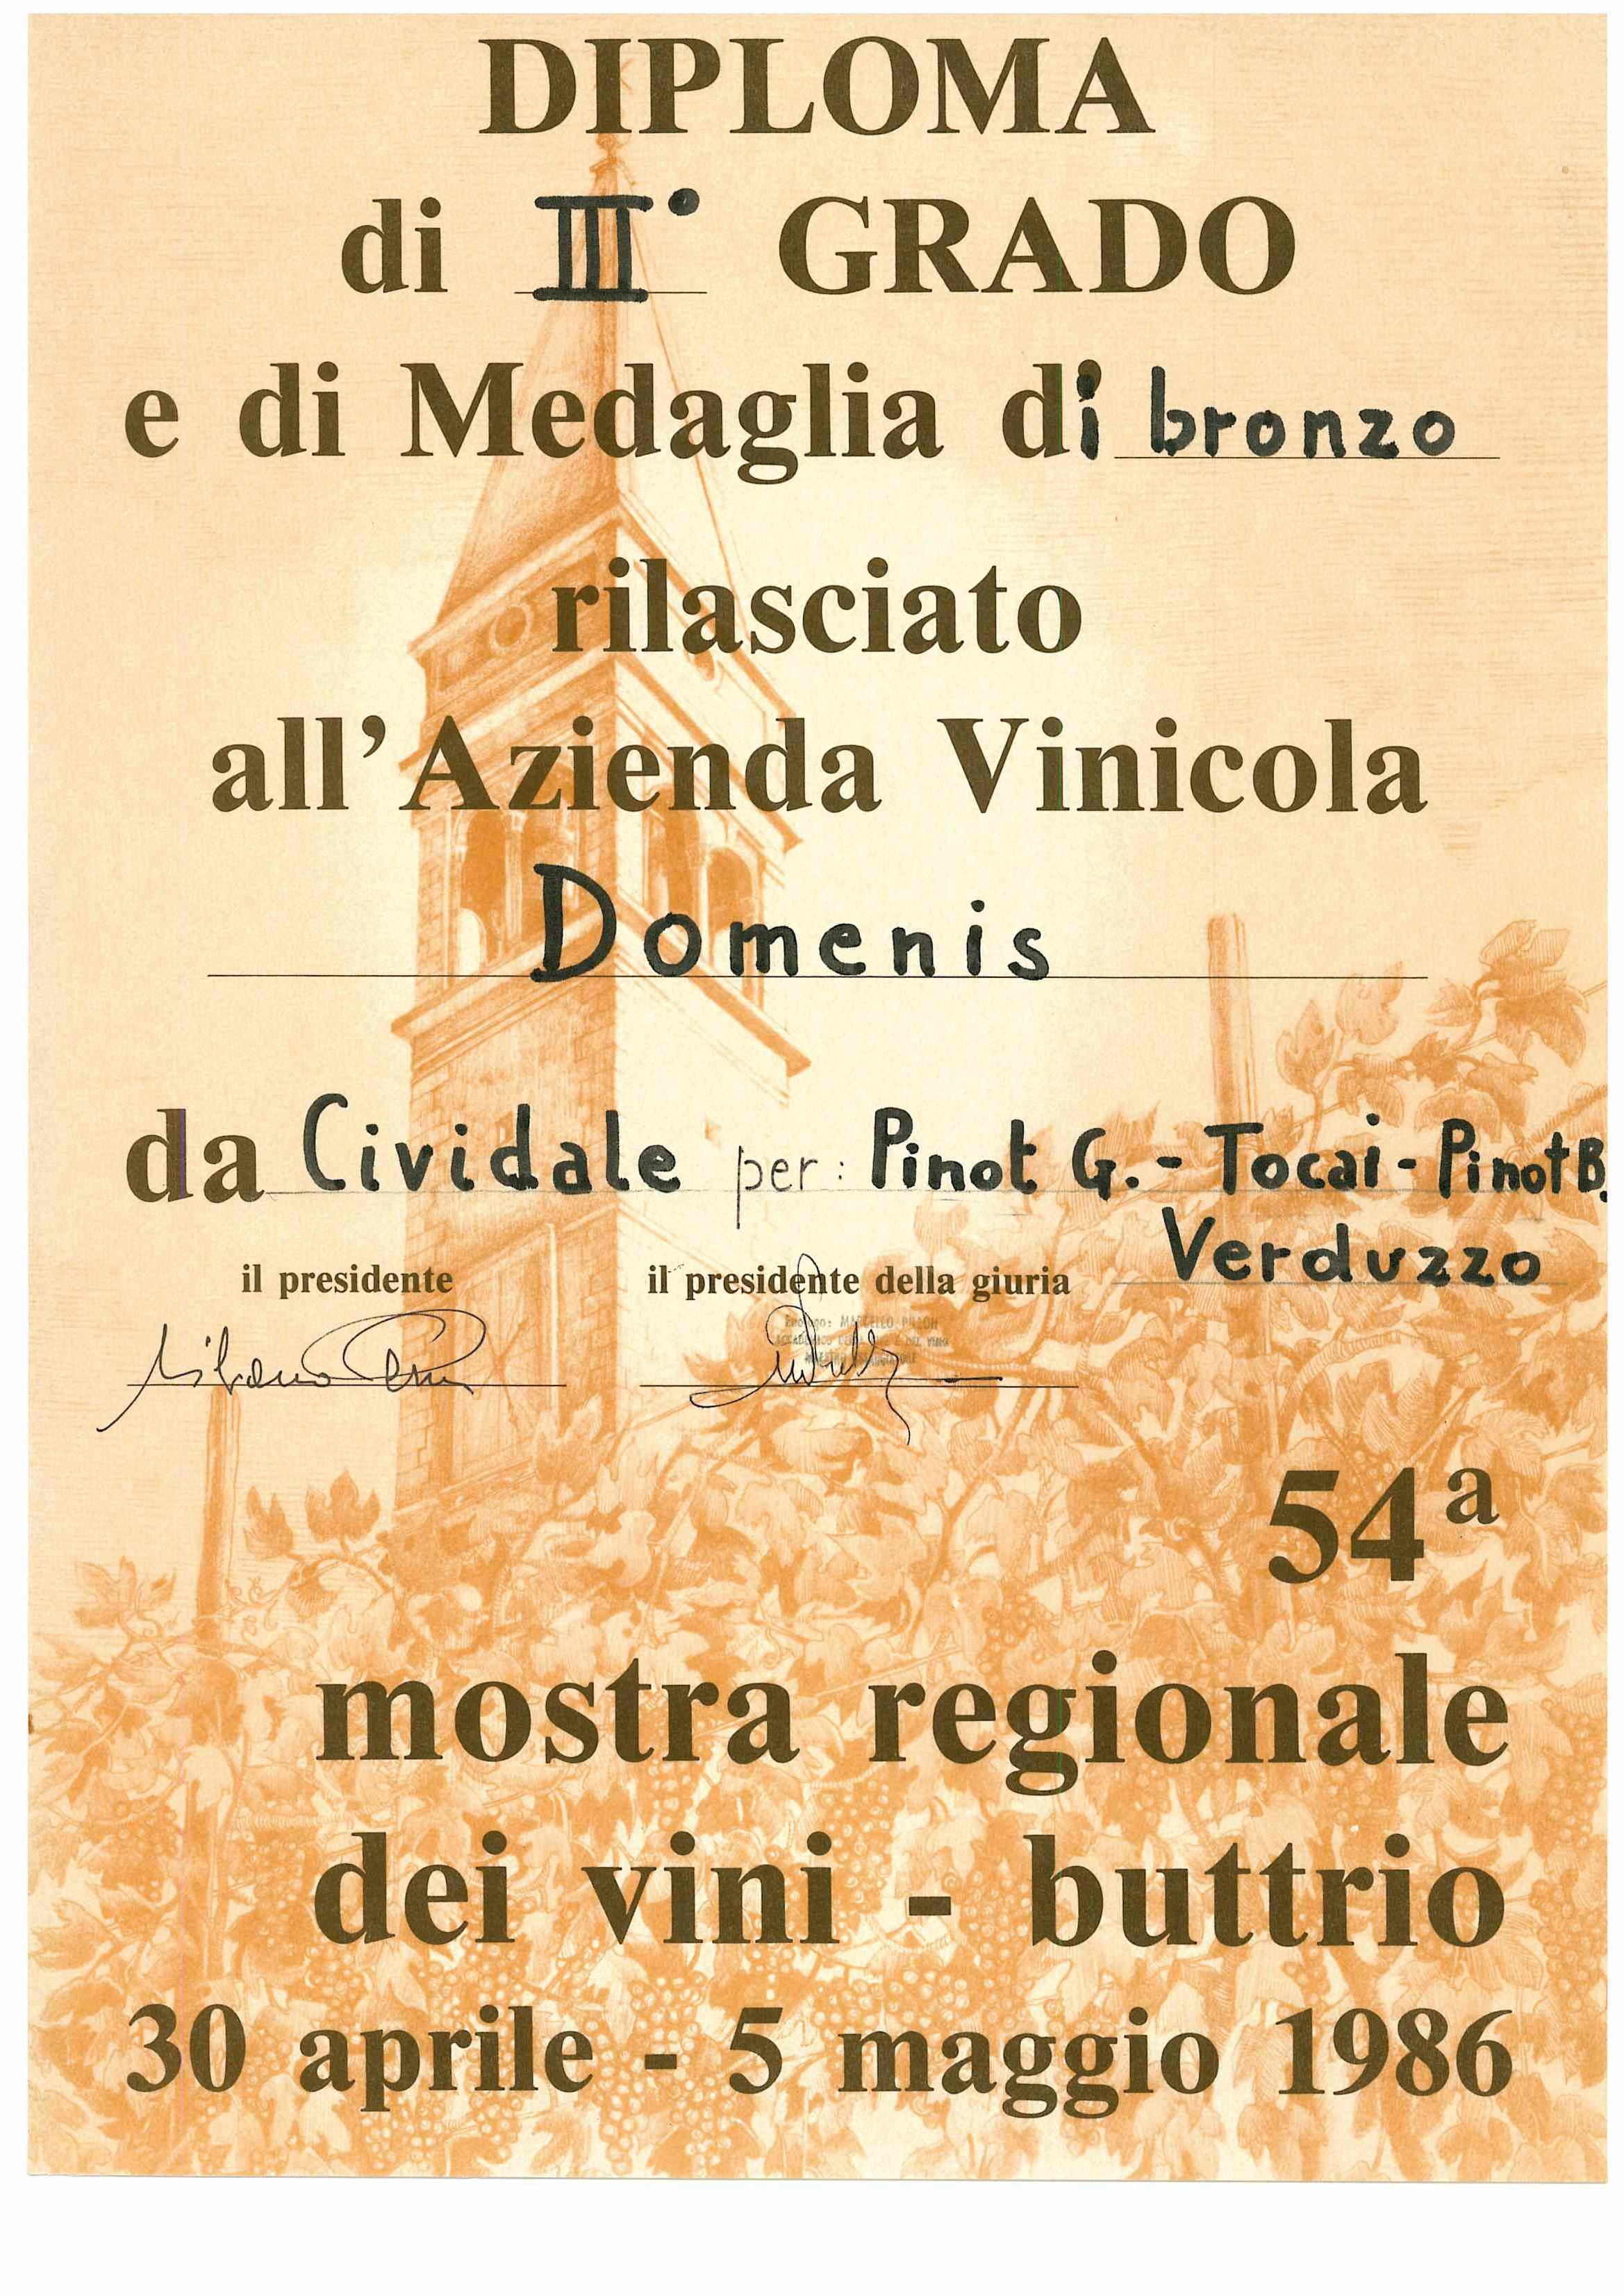 Mostra Regionale dei Vini Buttrio 1986